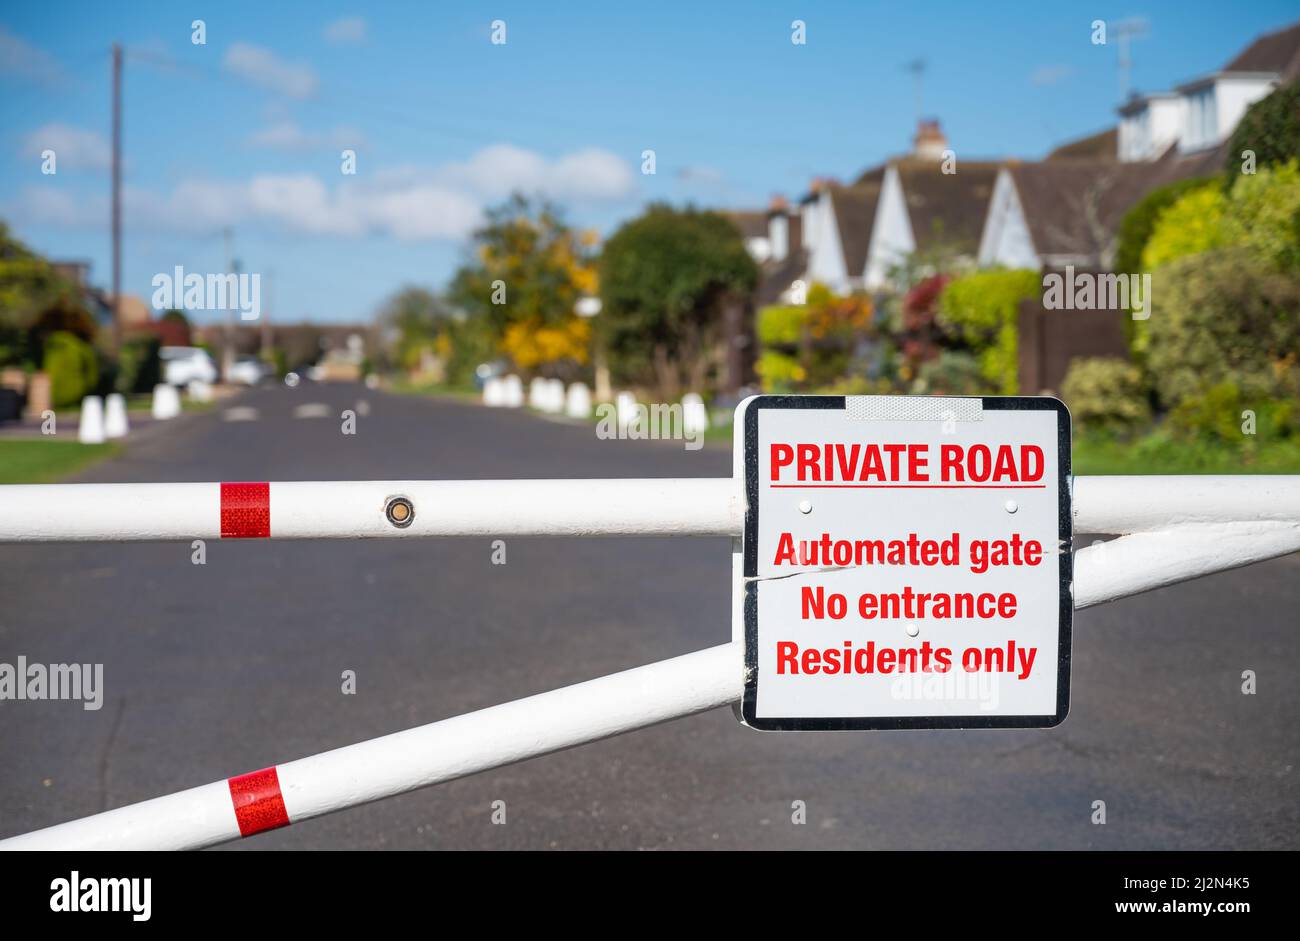 Entrée fermée avec porte fermée vers une route privée à Cudlow Avenue, Rustinington, West Sussex, Angleterre, Royaume-Uni. Banque D'Images